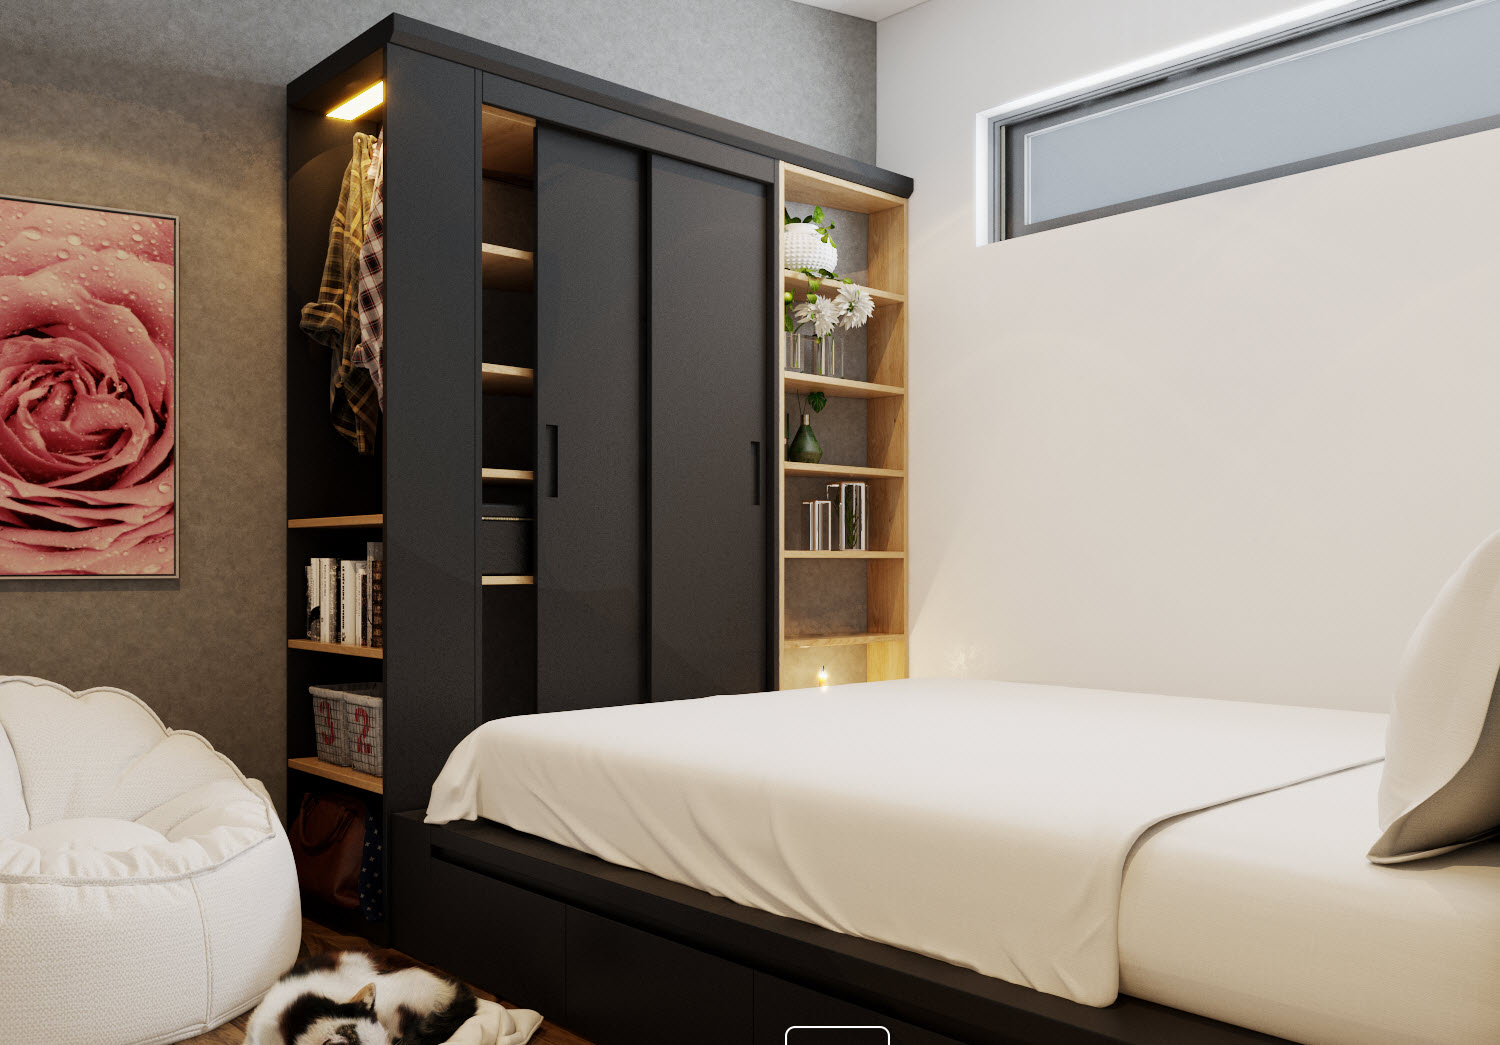 Các phòng ngủ trong căn hộ 70m2 đều được thiết kế tủ kệ lưu trữ thoải mái, gọn đẹp, không chiếm nhiều diện tích nhờ tận dụng không gian theo chiều dọc.